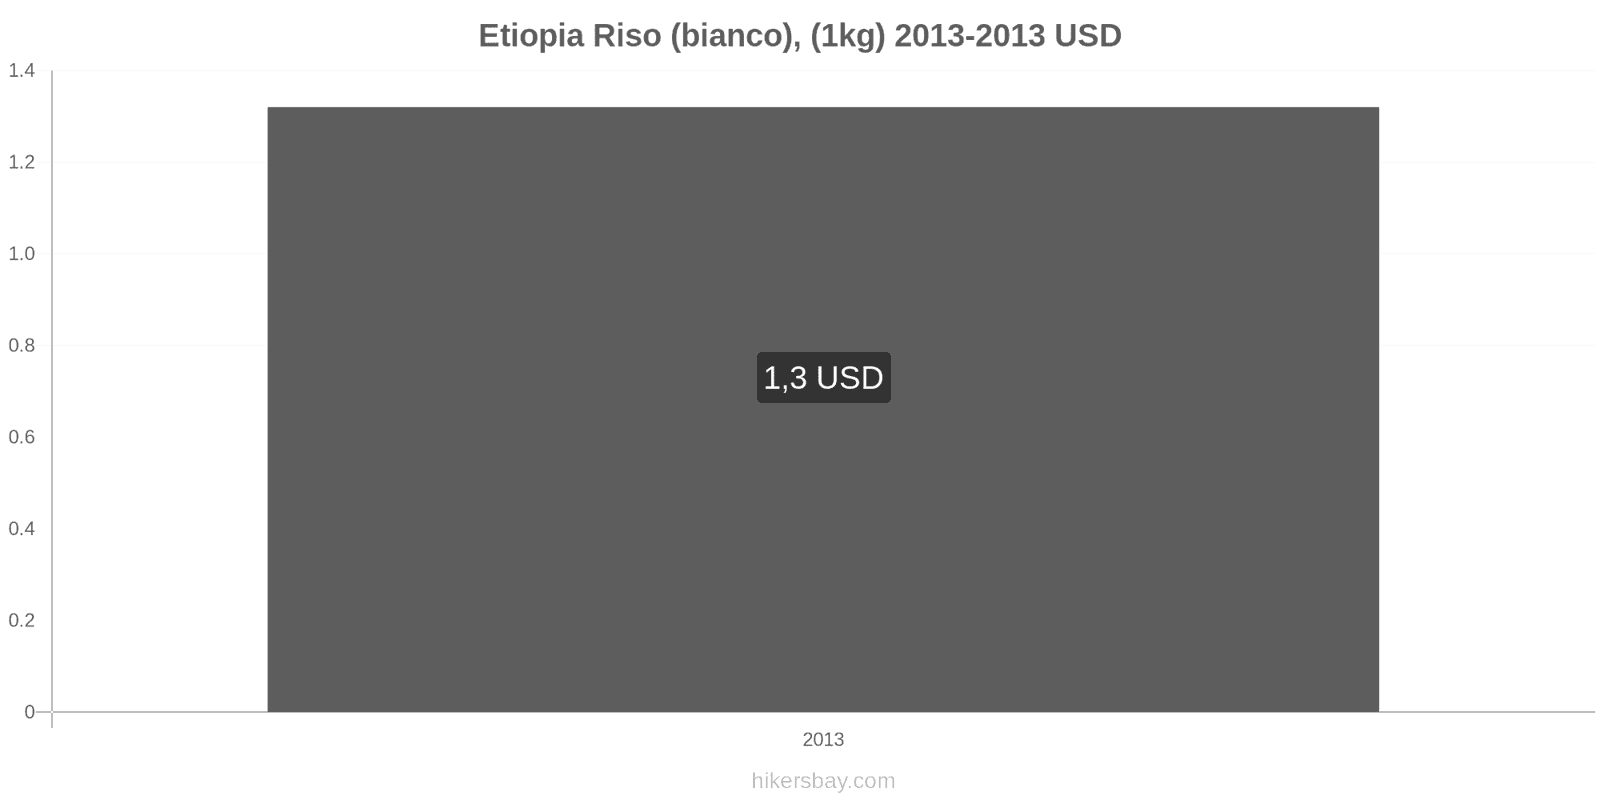 Etiopia cambi di prezzo Chilo di riso bianco hikersbay.com